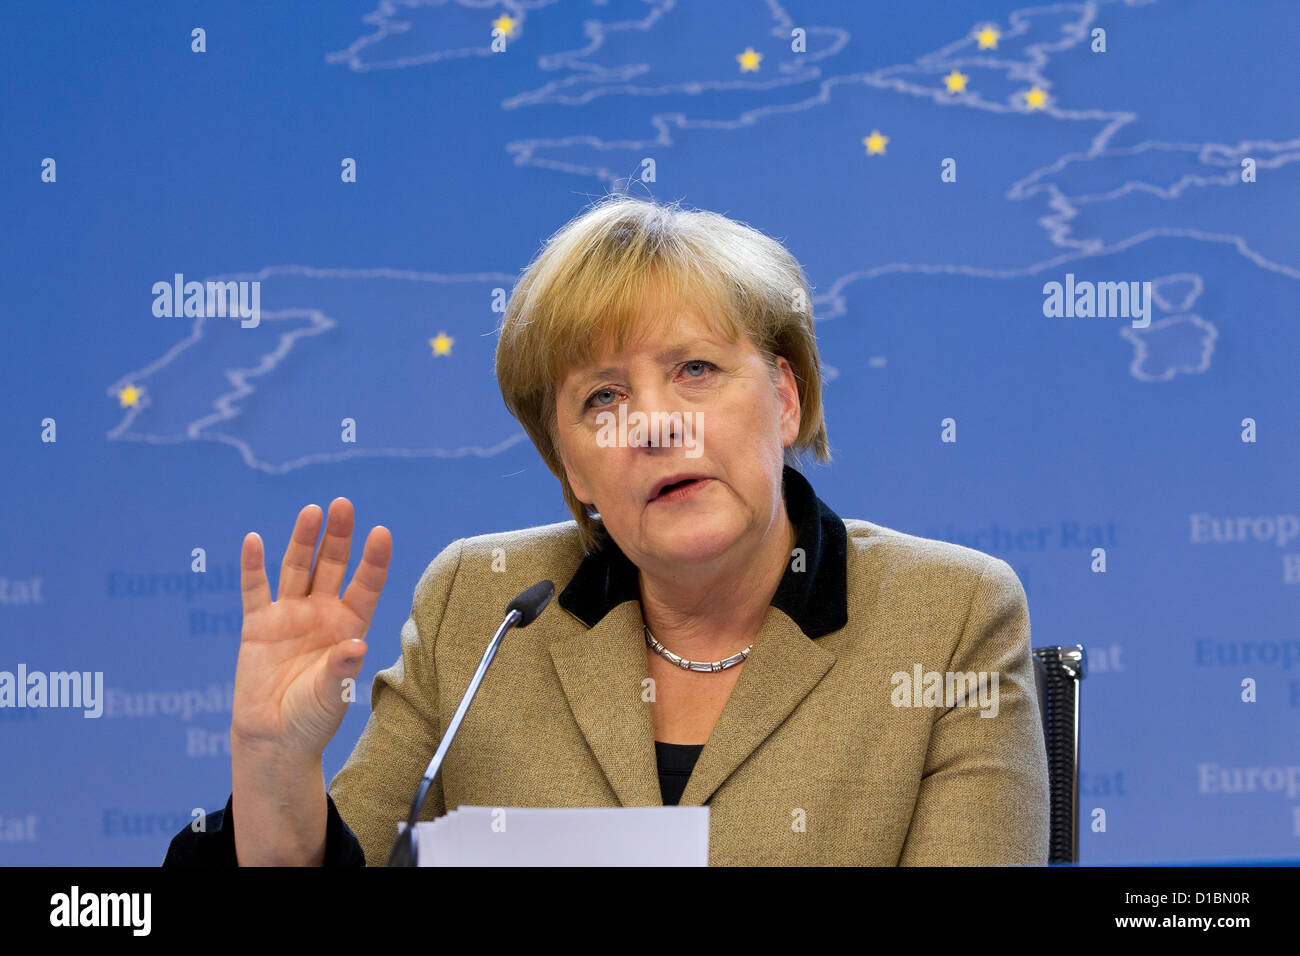 La chancelière allemande Angela Merkel sur la photo s'exprimant après la réunion du Conseil européen des chefs d'État et de gouvernement Banque D'Images